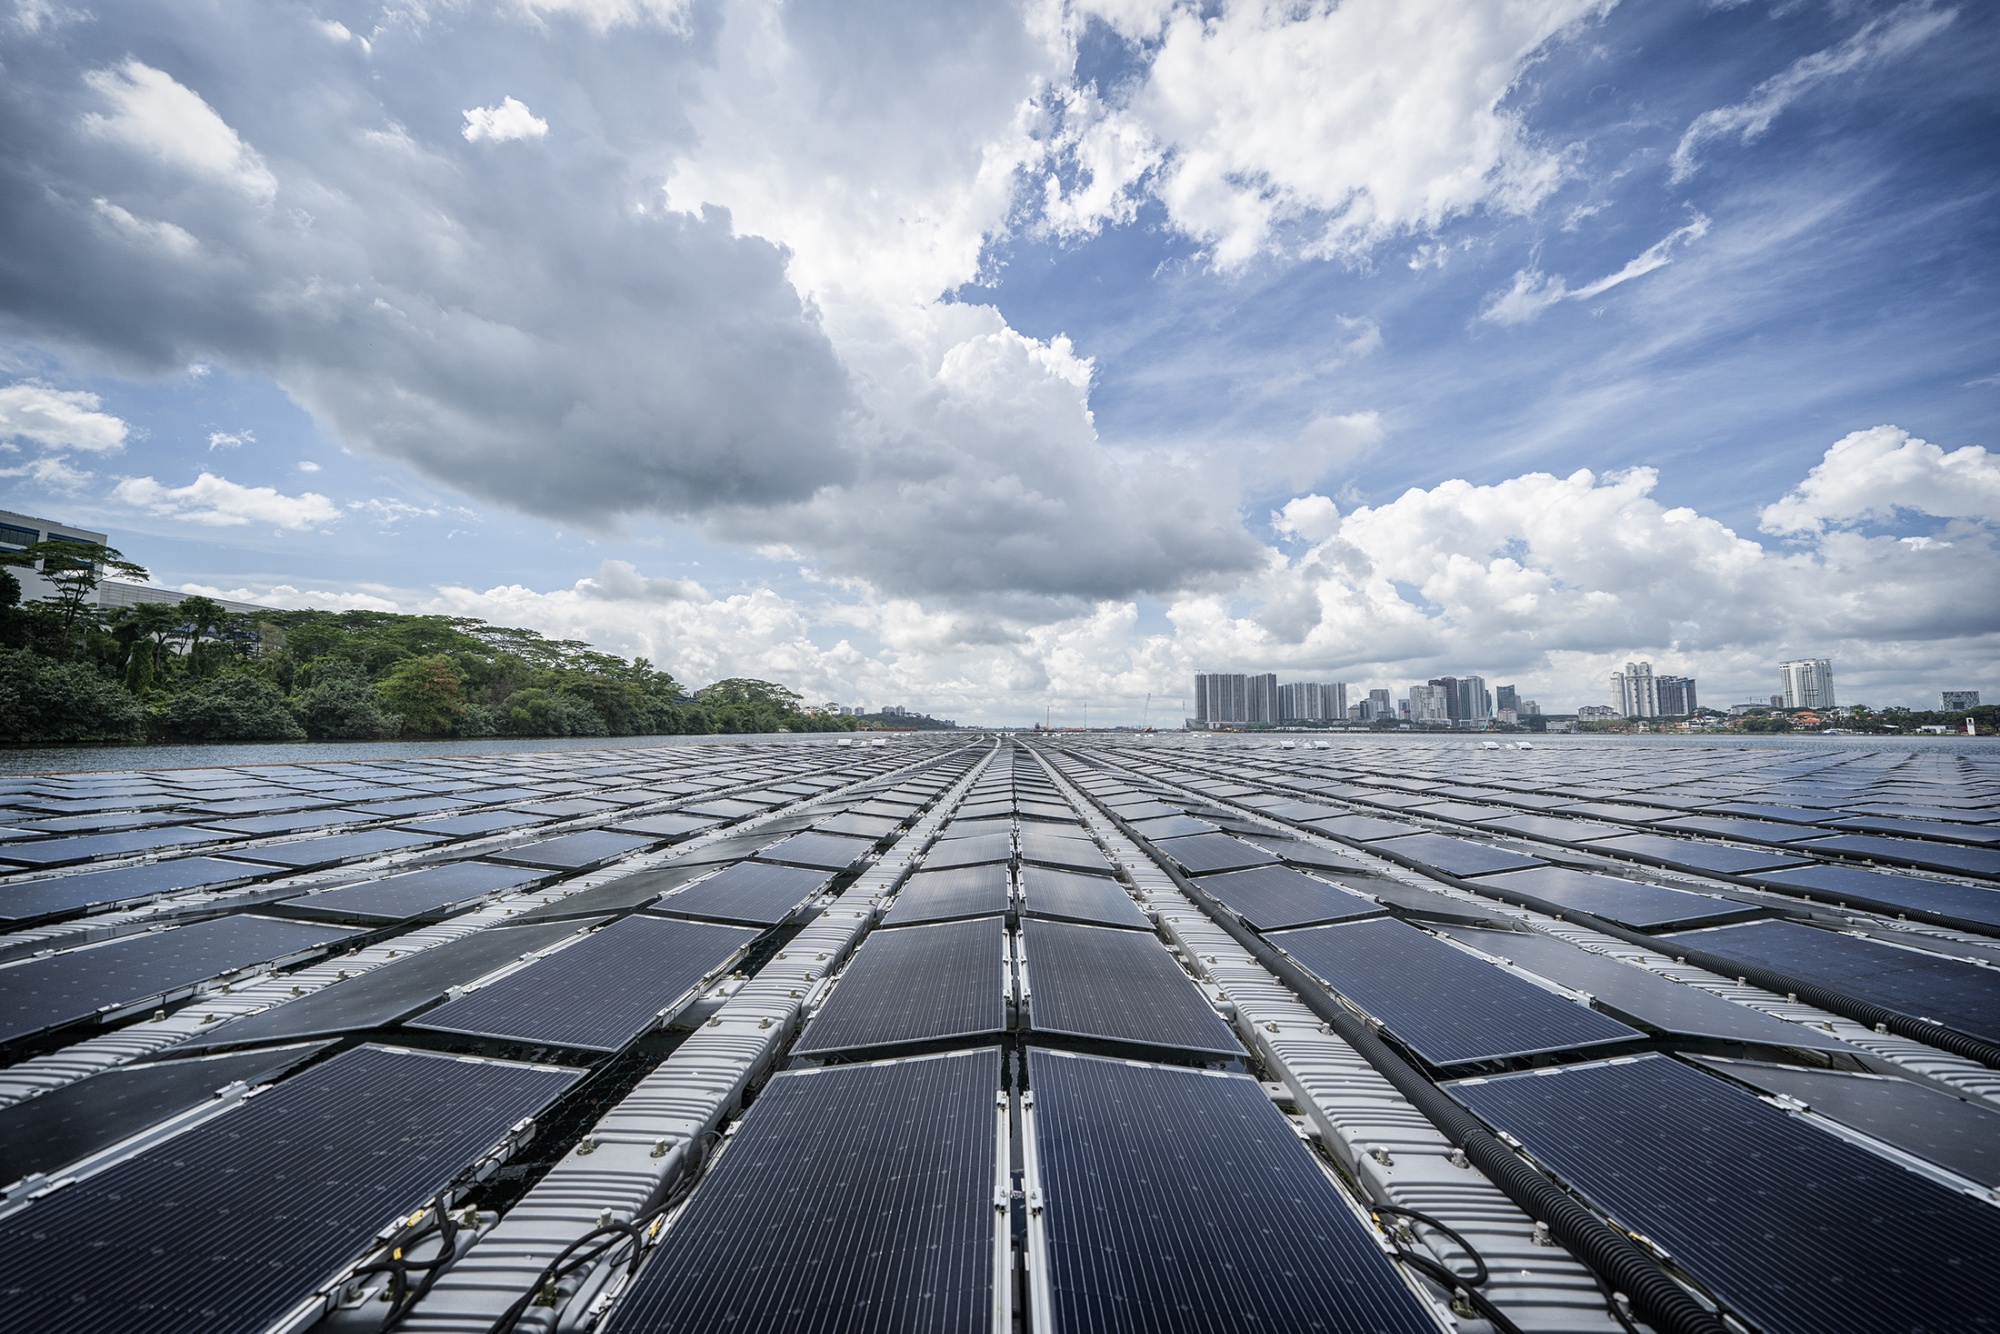 Nhà máy điện mặt trời nổi trên eo biển Johor ở Singapore.  Đầu tư vào năng lượng mặt trời được dự báo sẽ vượt qua chi tiêu cho sản xuất dầu lần đầu tiên trong năm nay, thúc đẩy nỗ lực kiểm tra các địa điểm mới và đôi khi không thể thực hiện được cho năng lượng mặt trời. 